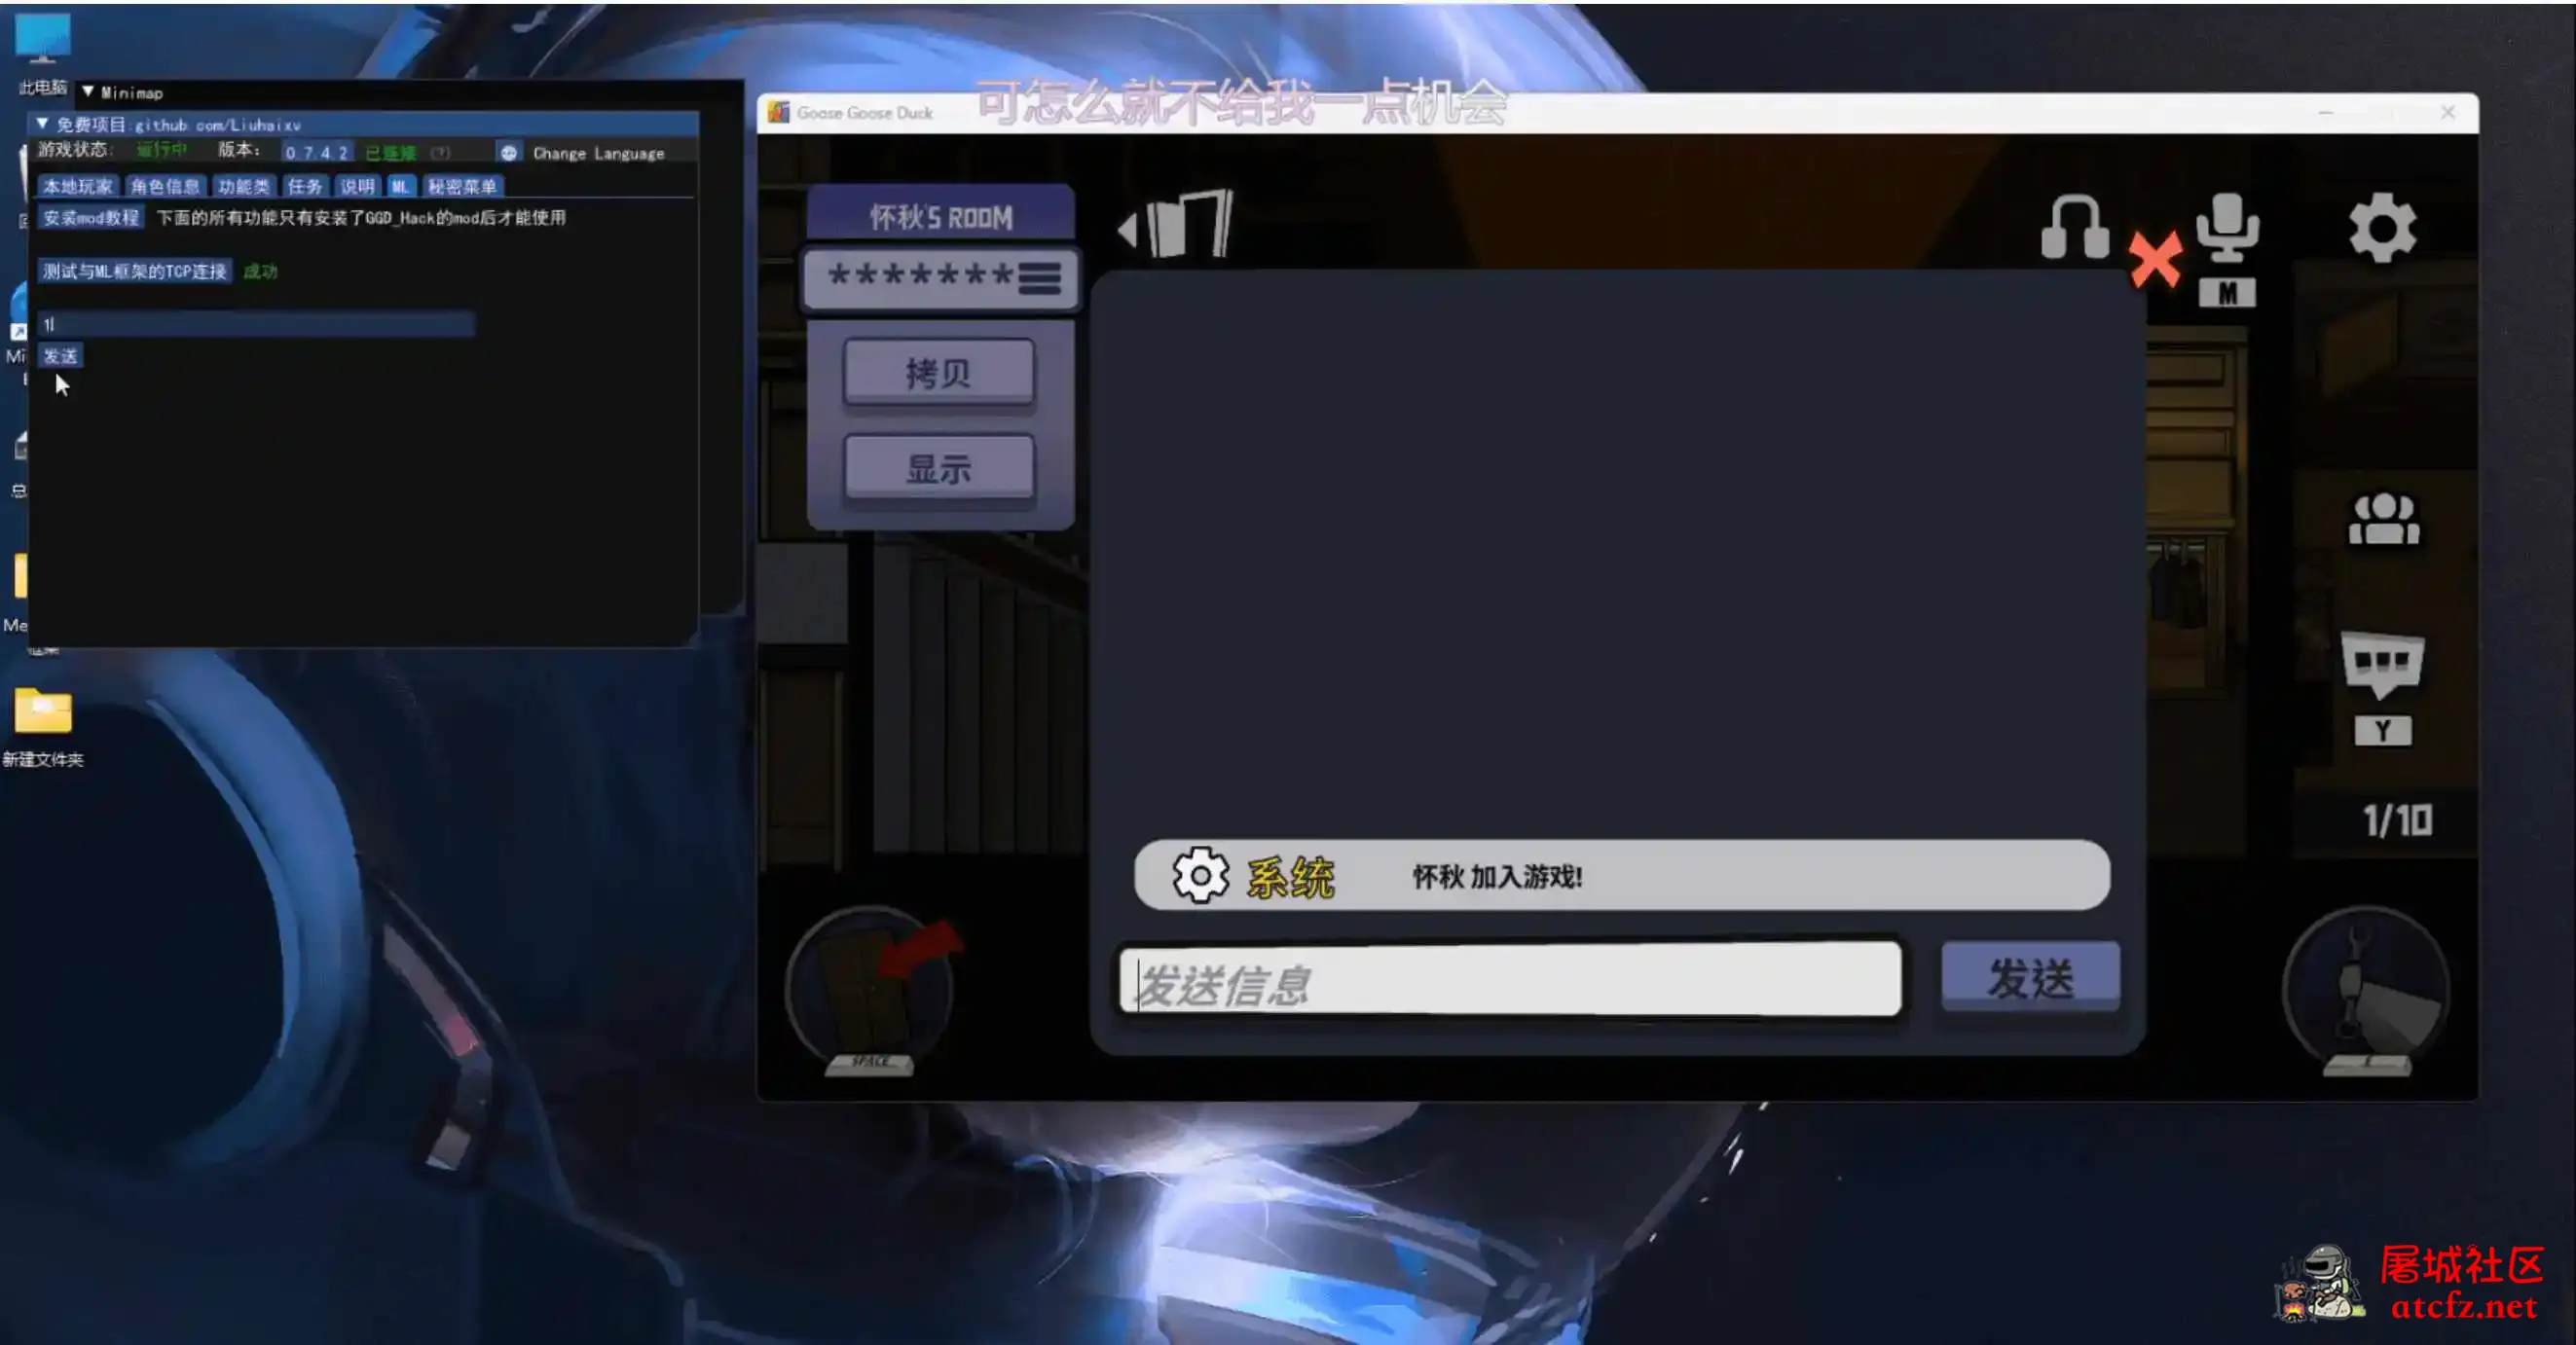 鹅鸭杀Minimp显玩家传送无冷却穿墙多功能辅助v1.5.1 屠城辅助网www.tcfz1.com2109